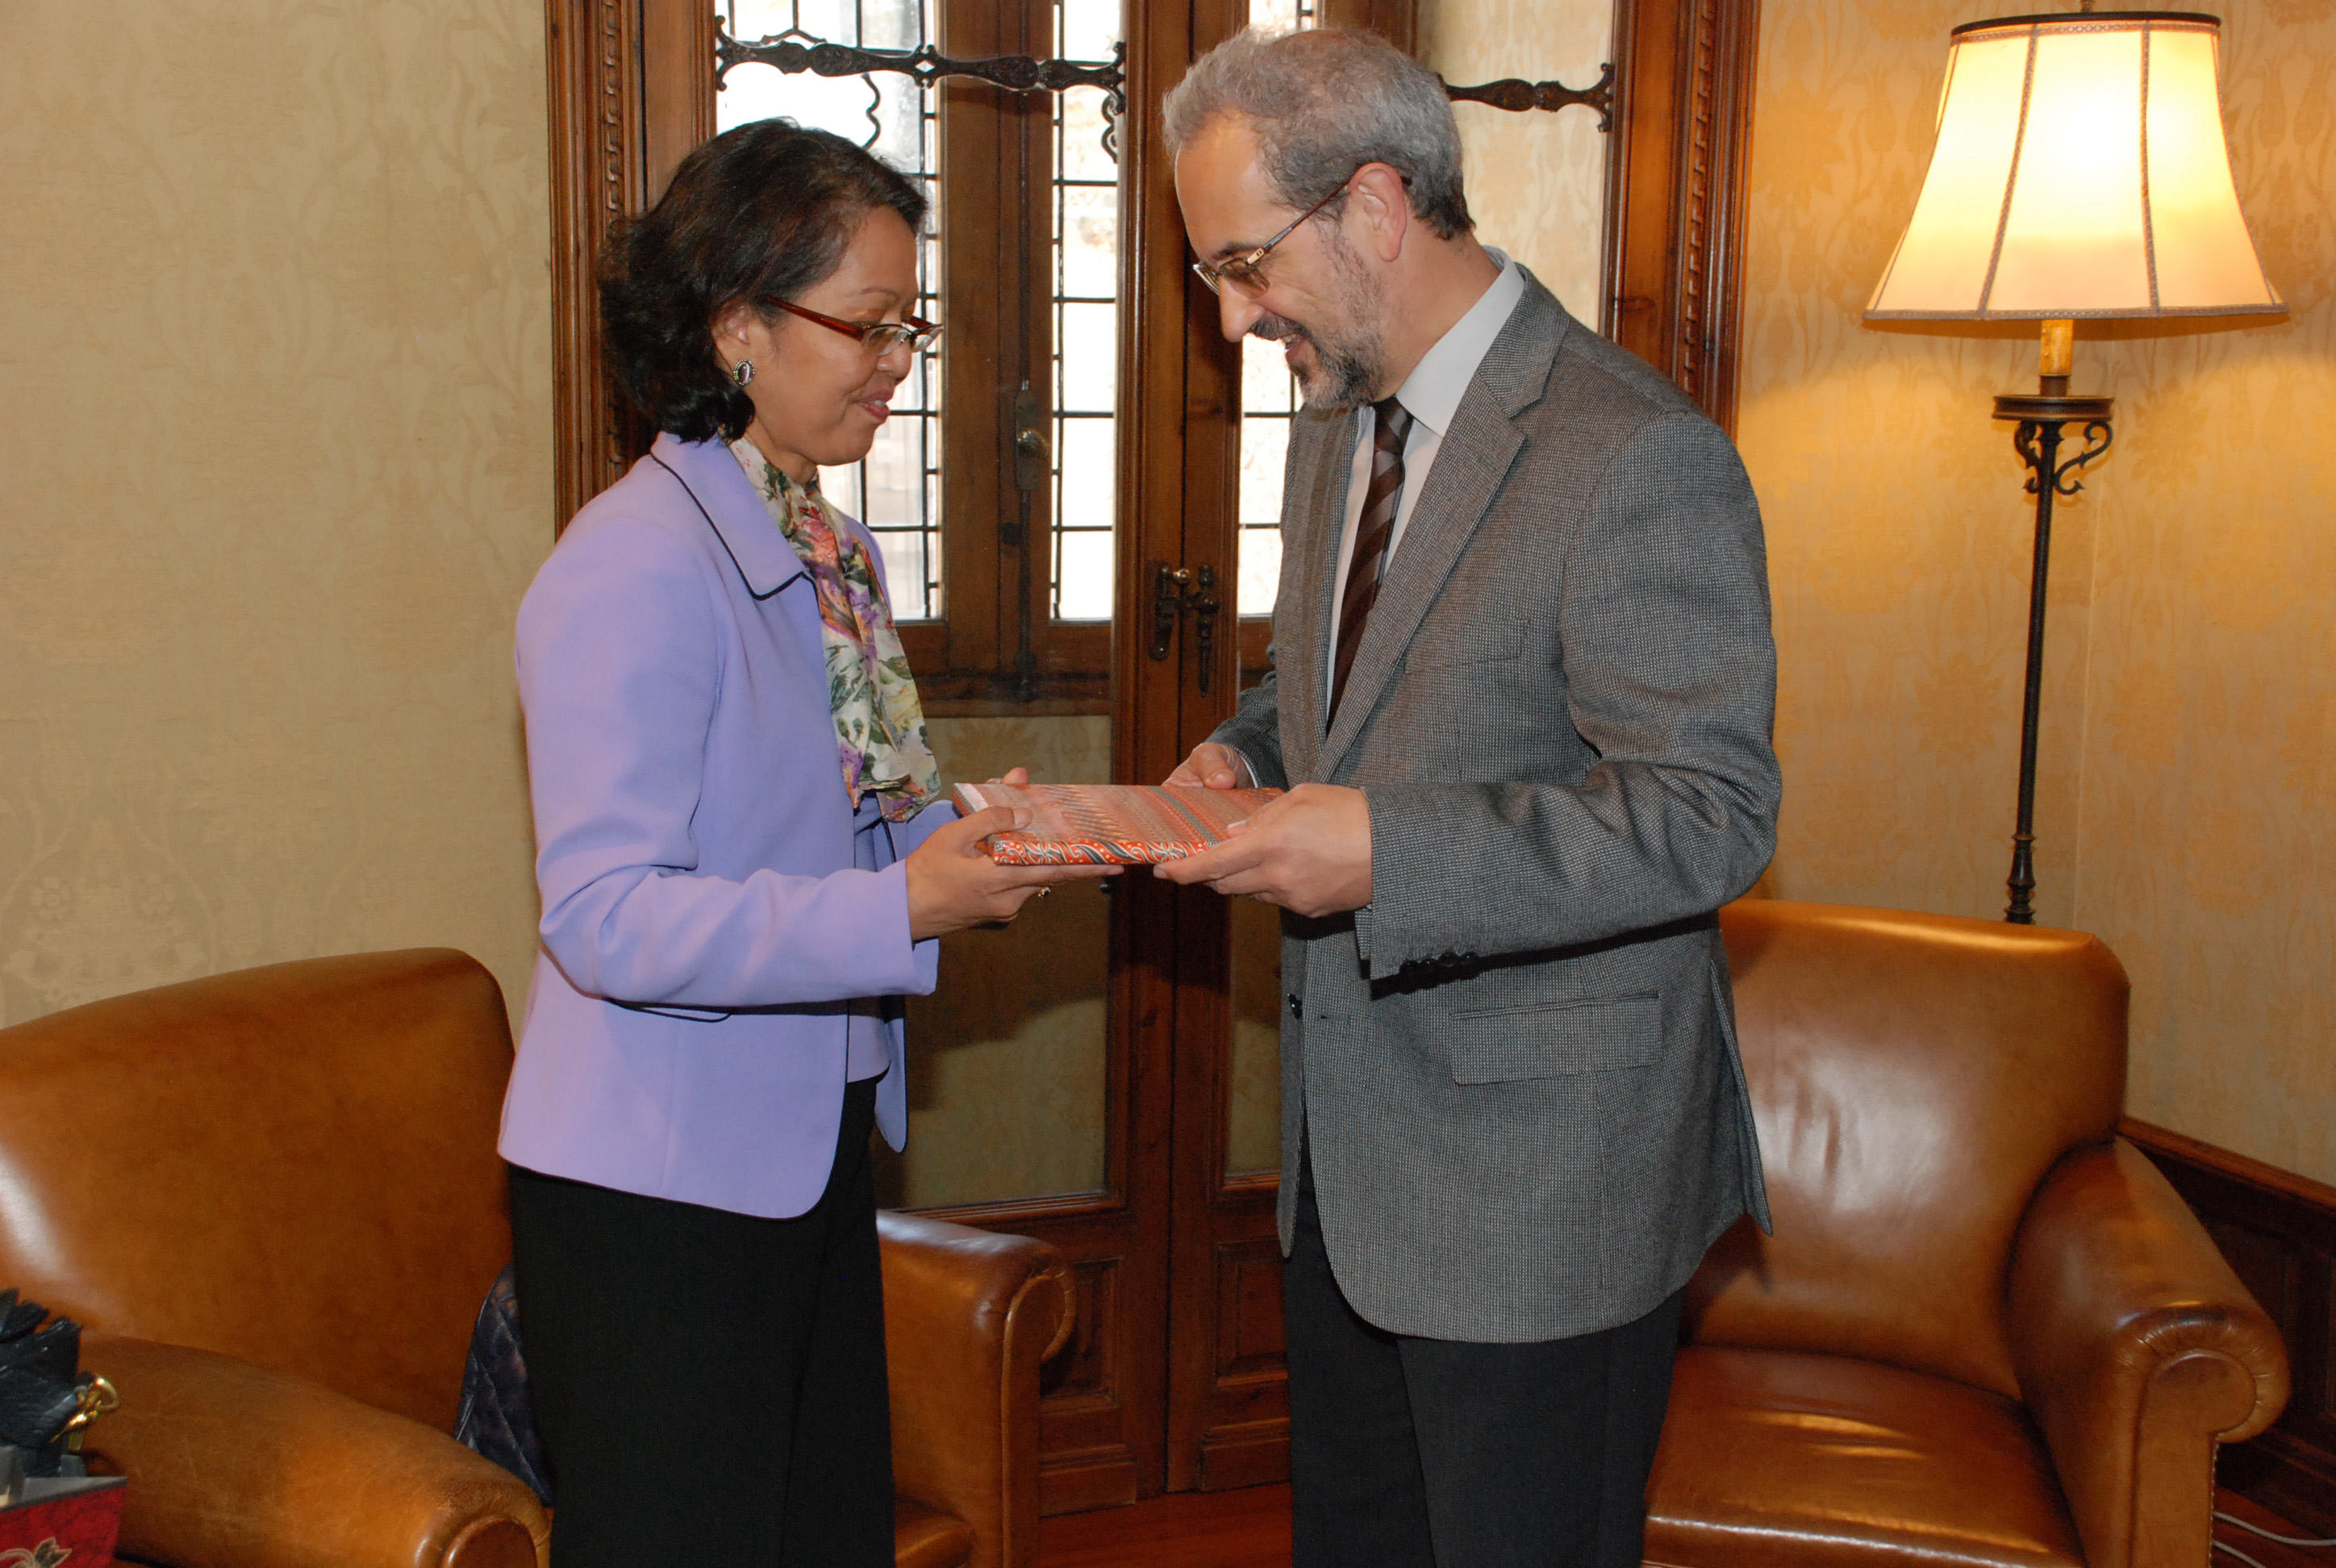 El rector, Daniel Hernández Ruipérez, recibe a la embajadora de Indonesia en España, Adiyatwidi Adiwoso Asmady